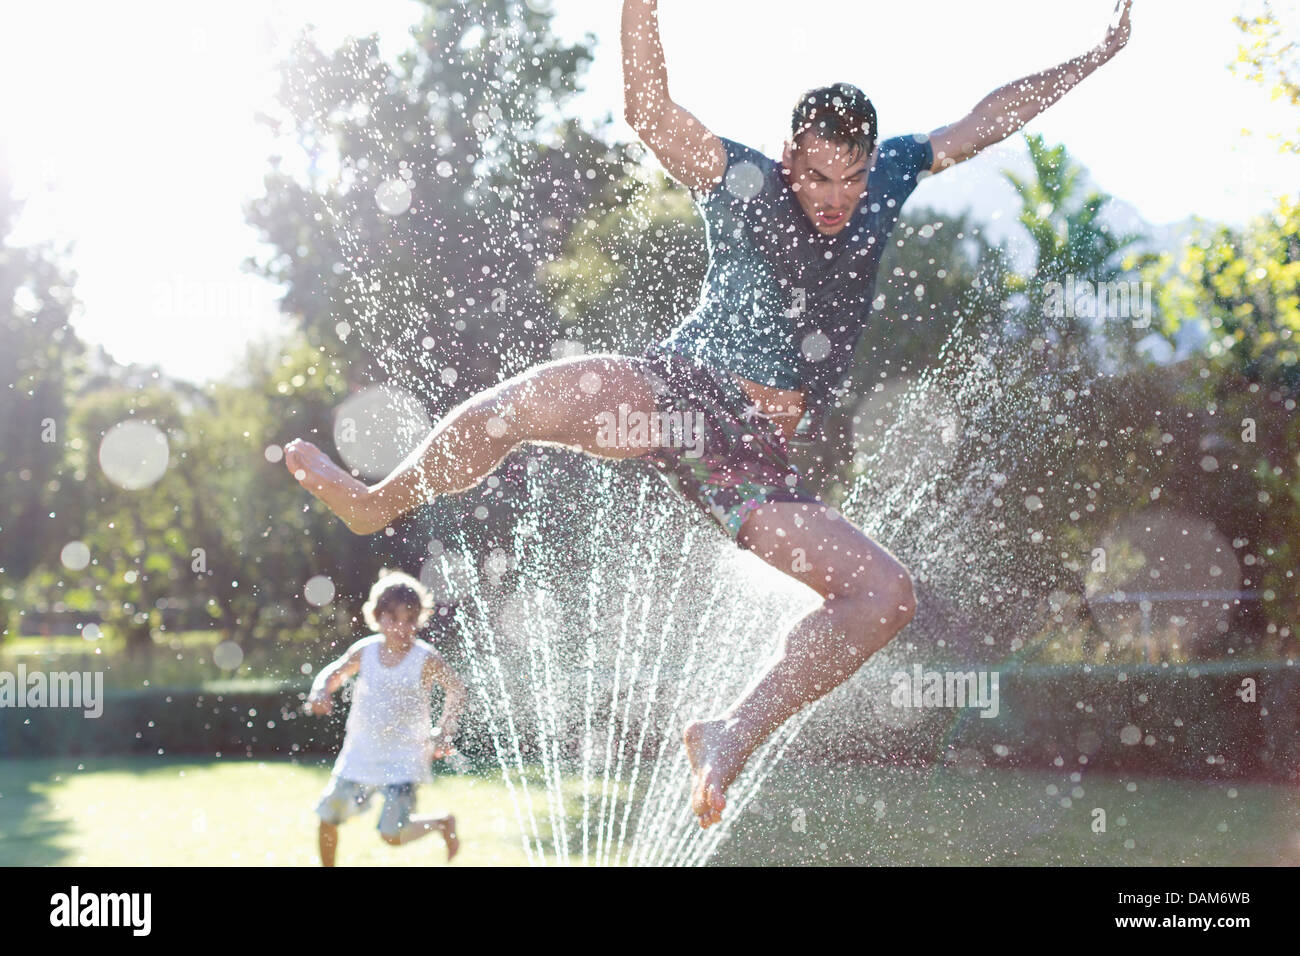 Padre e figlio giocando in impianti sprinkler in cortile Foto Stock